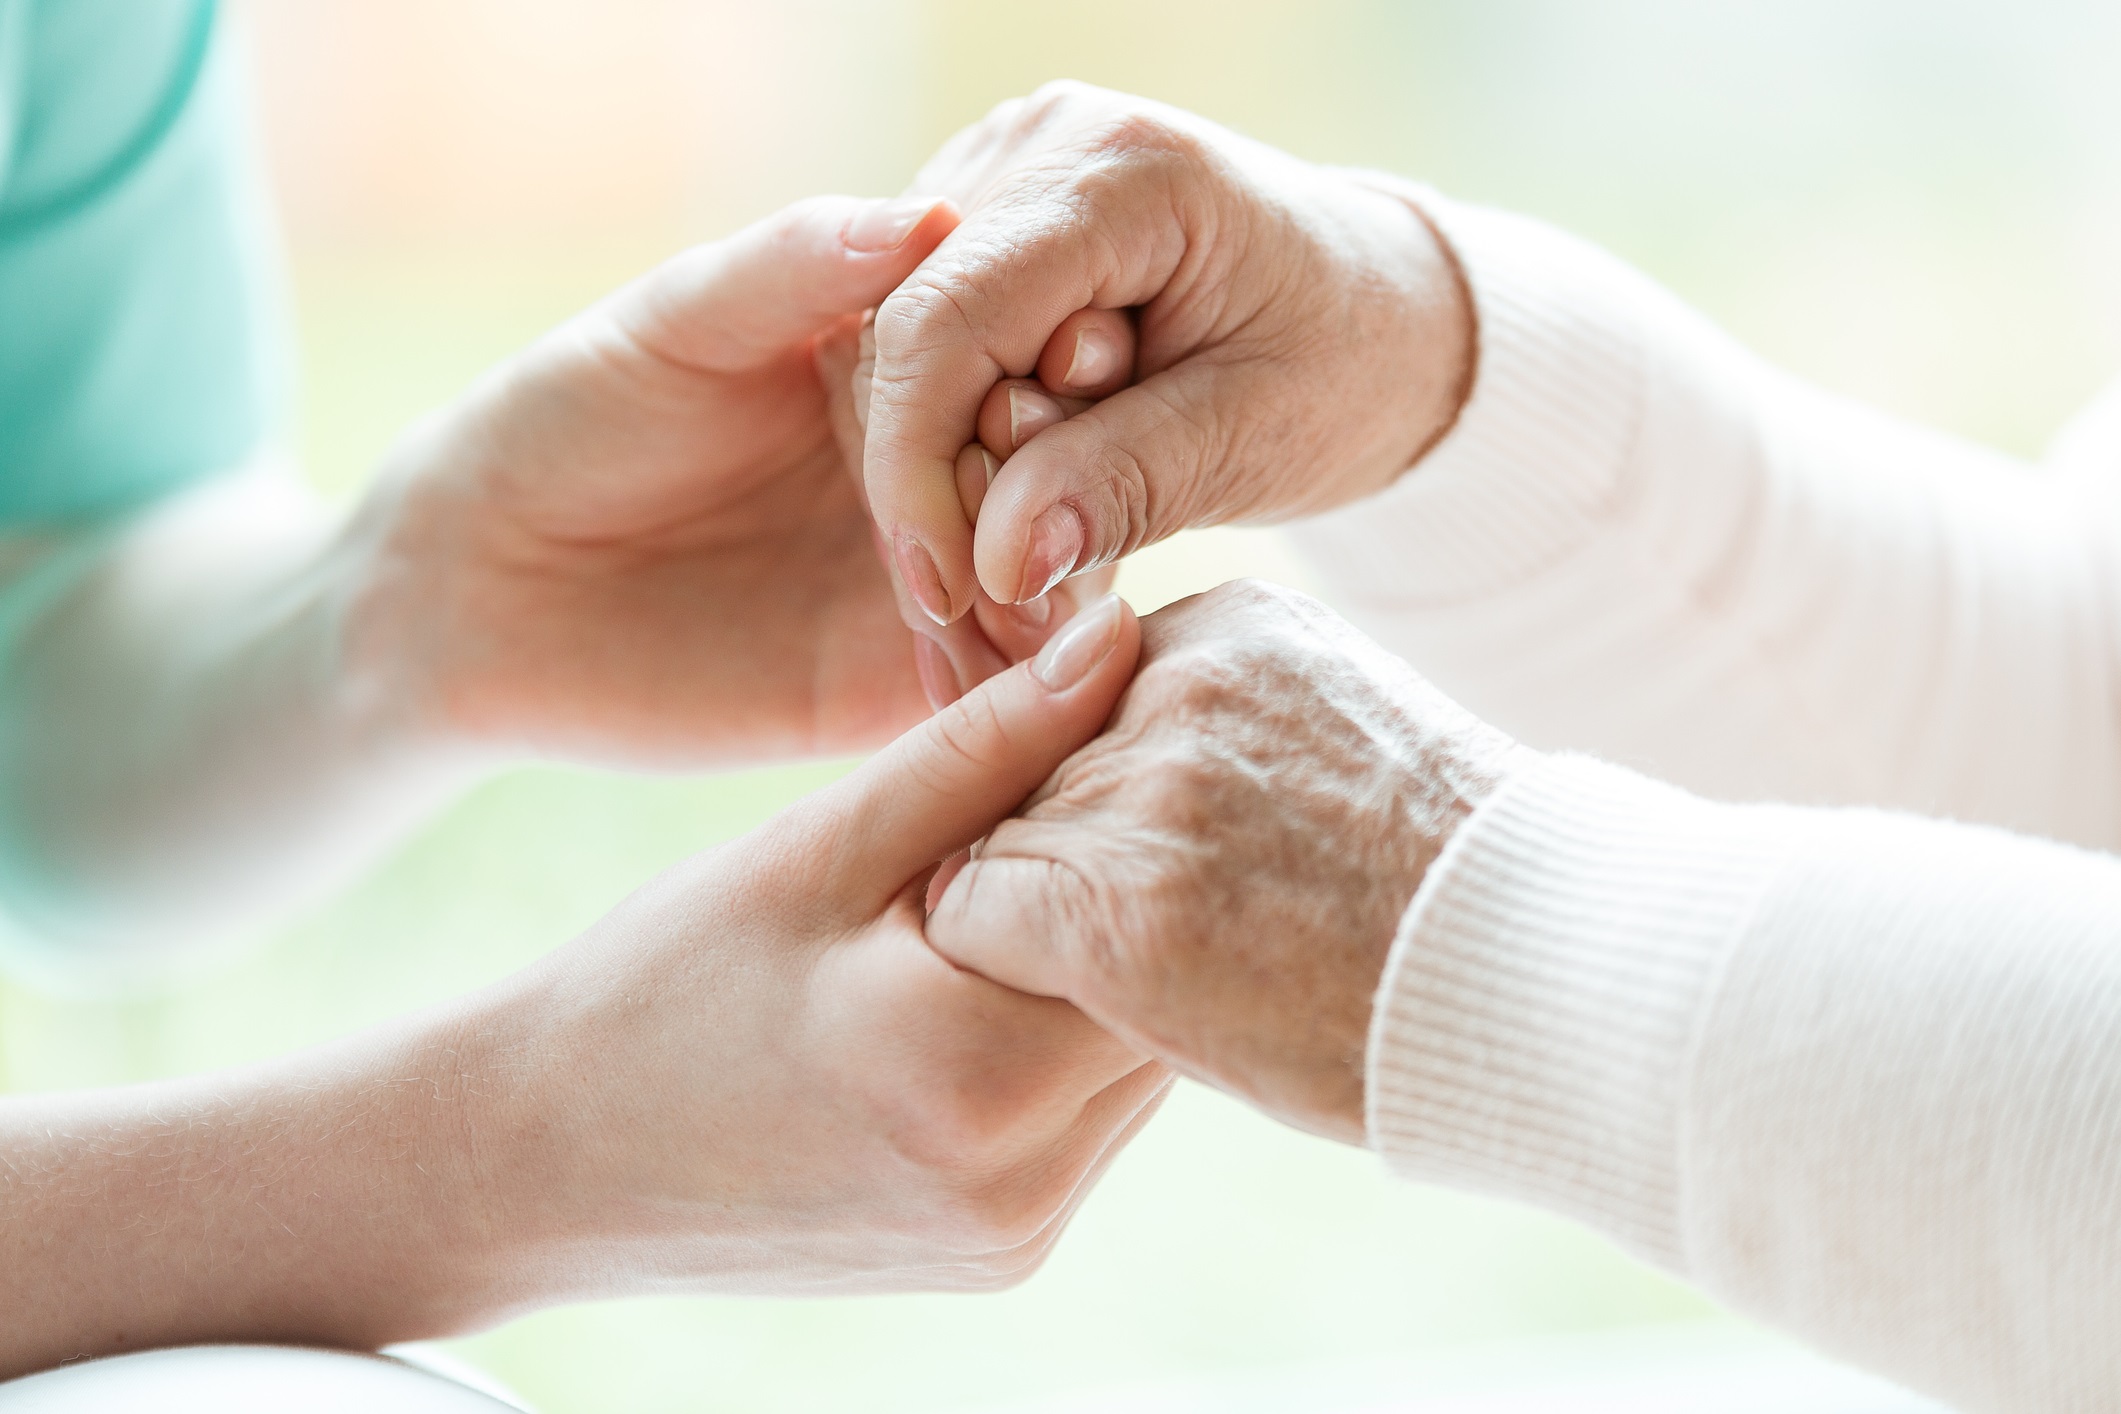 Fingernail Care for the Elderly